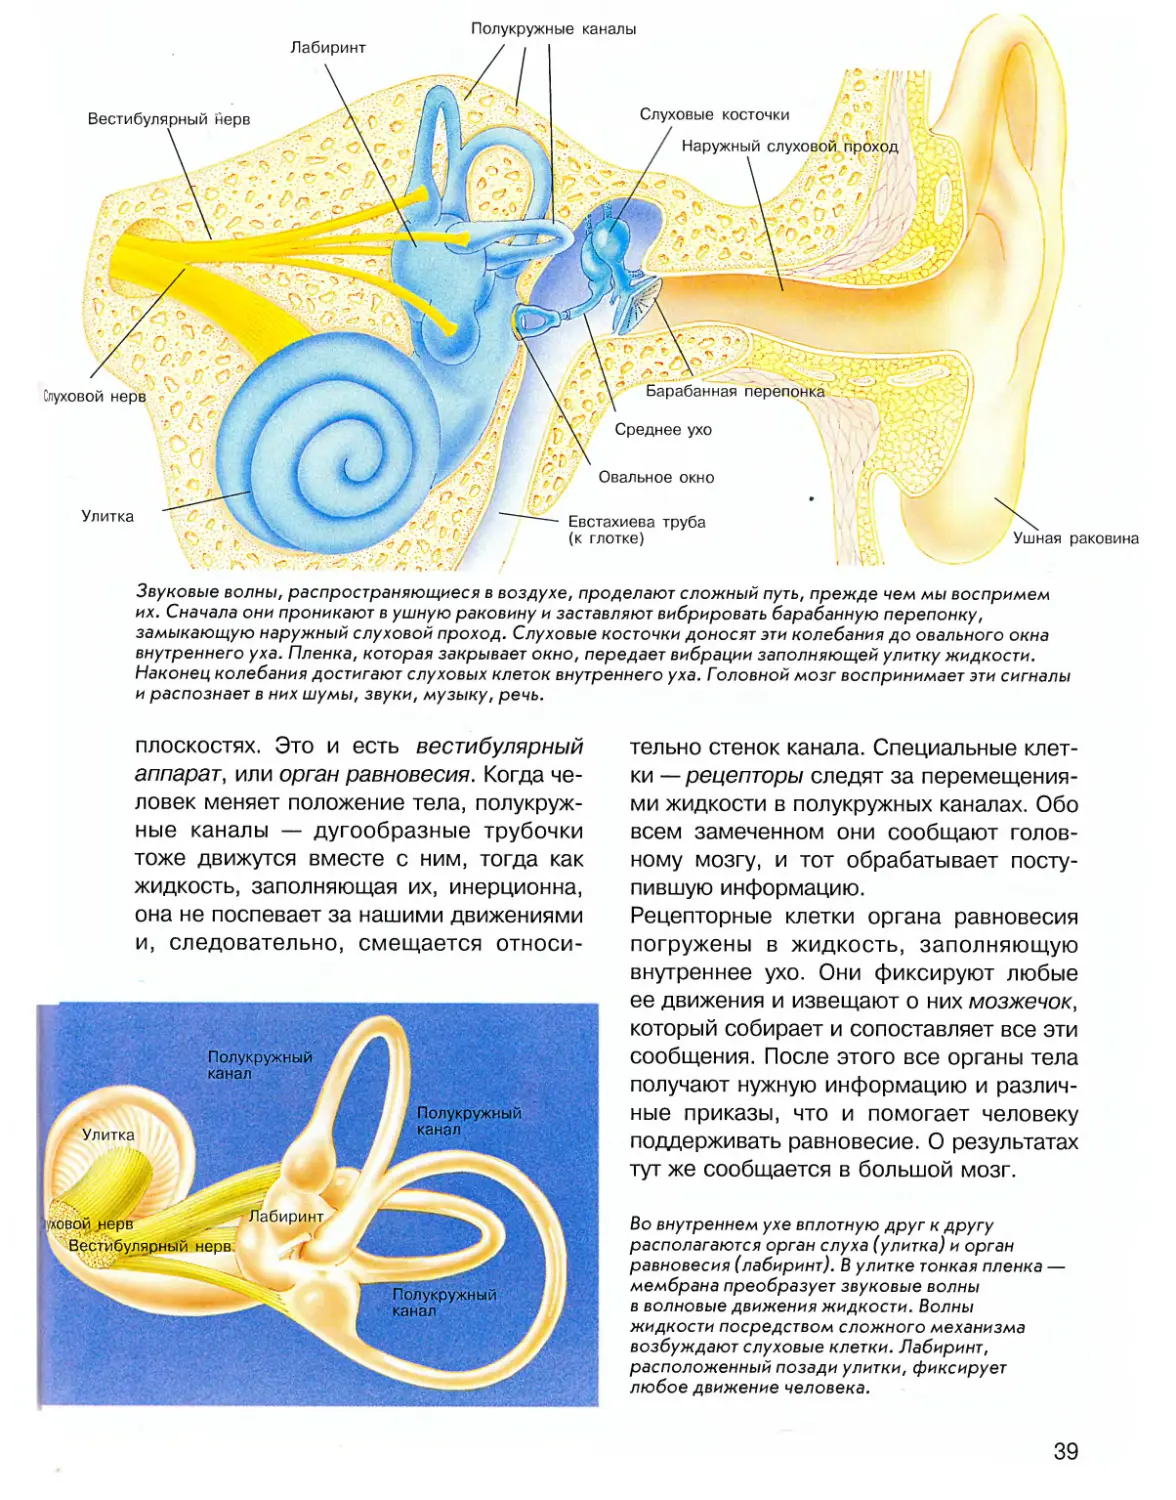 Вестибулярный аппарат расположен в среднем ухе. Вестибулярный аппарат внутреннего уха. Полукружные каналы внутреннего уха. Внутреннее ухо вестибулярный аппарат. Строение полукружных каналов внутреннего уха.